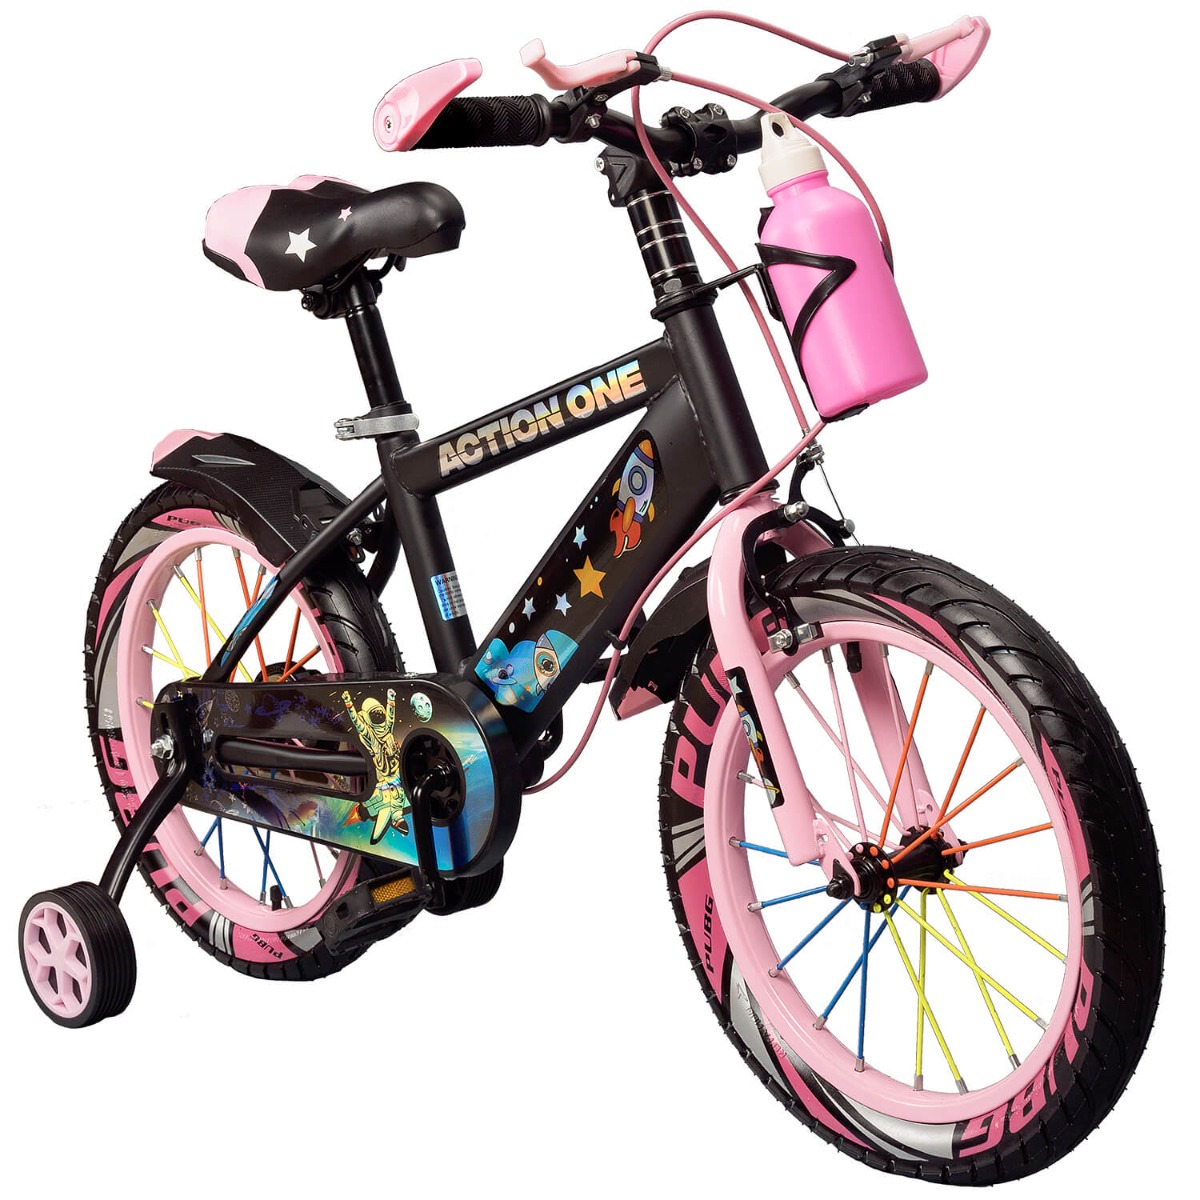 Bicicleta cu roti ajutatoare si bidon pentru apa Cameleon II, Action One, 14 inch, Roz